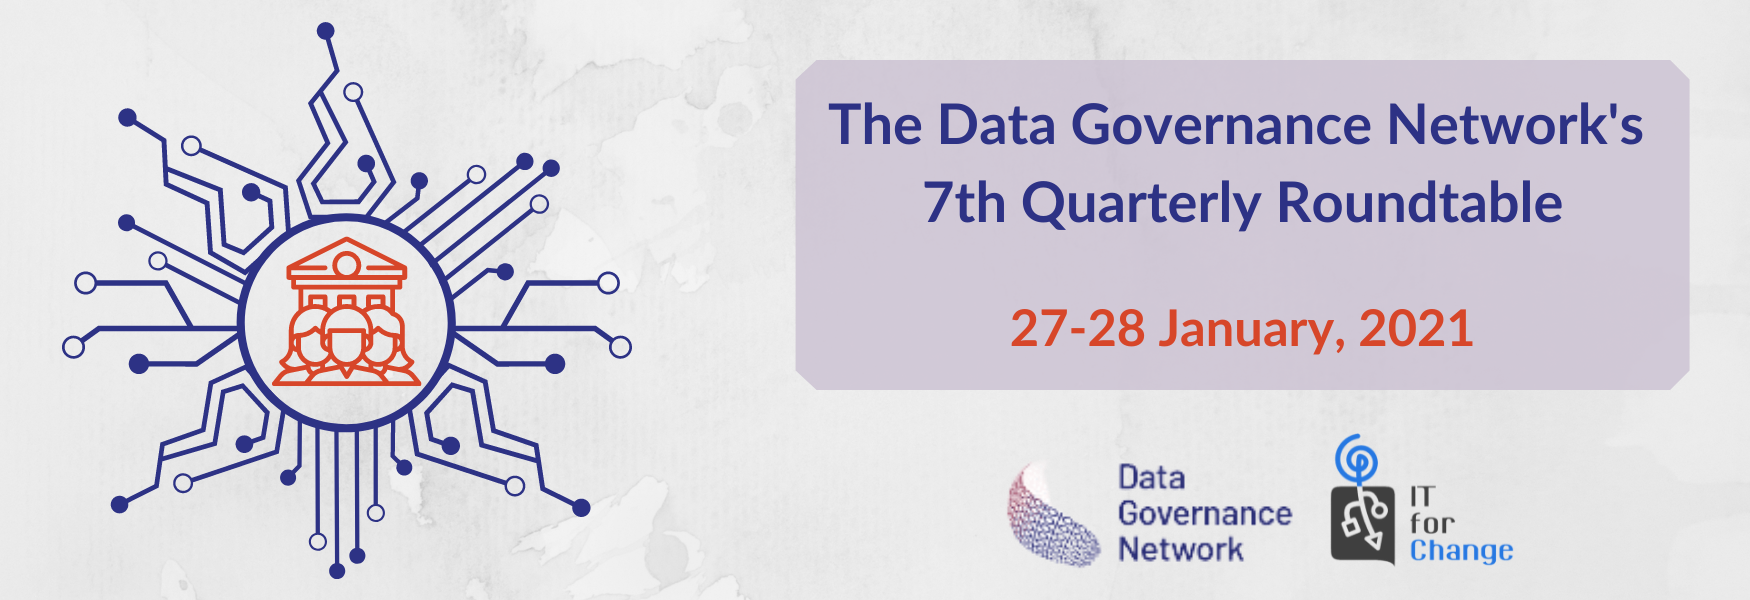 Data Governance Network's 7th Quarterly Roundtable